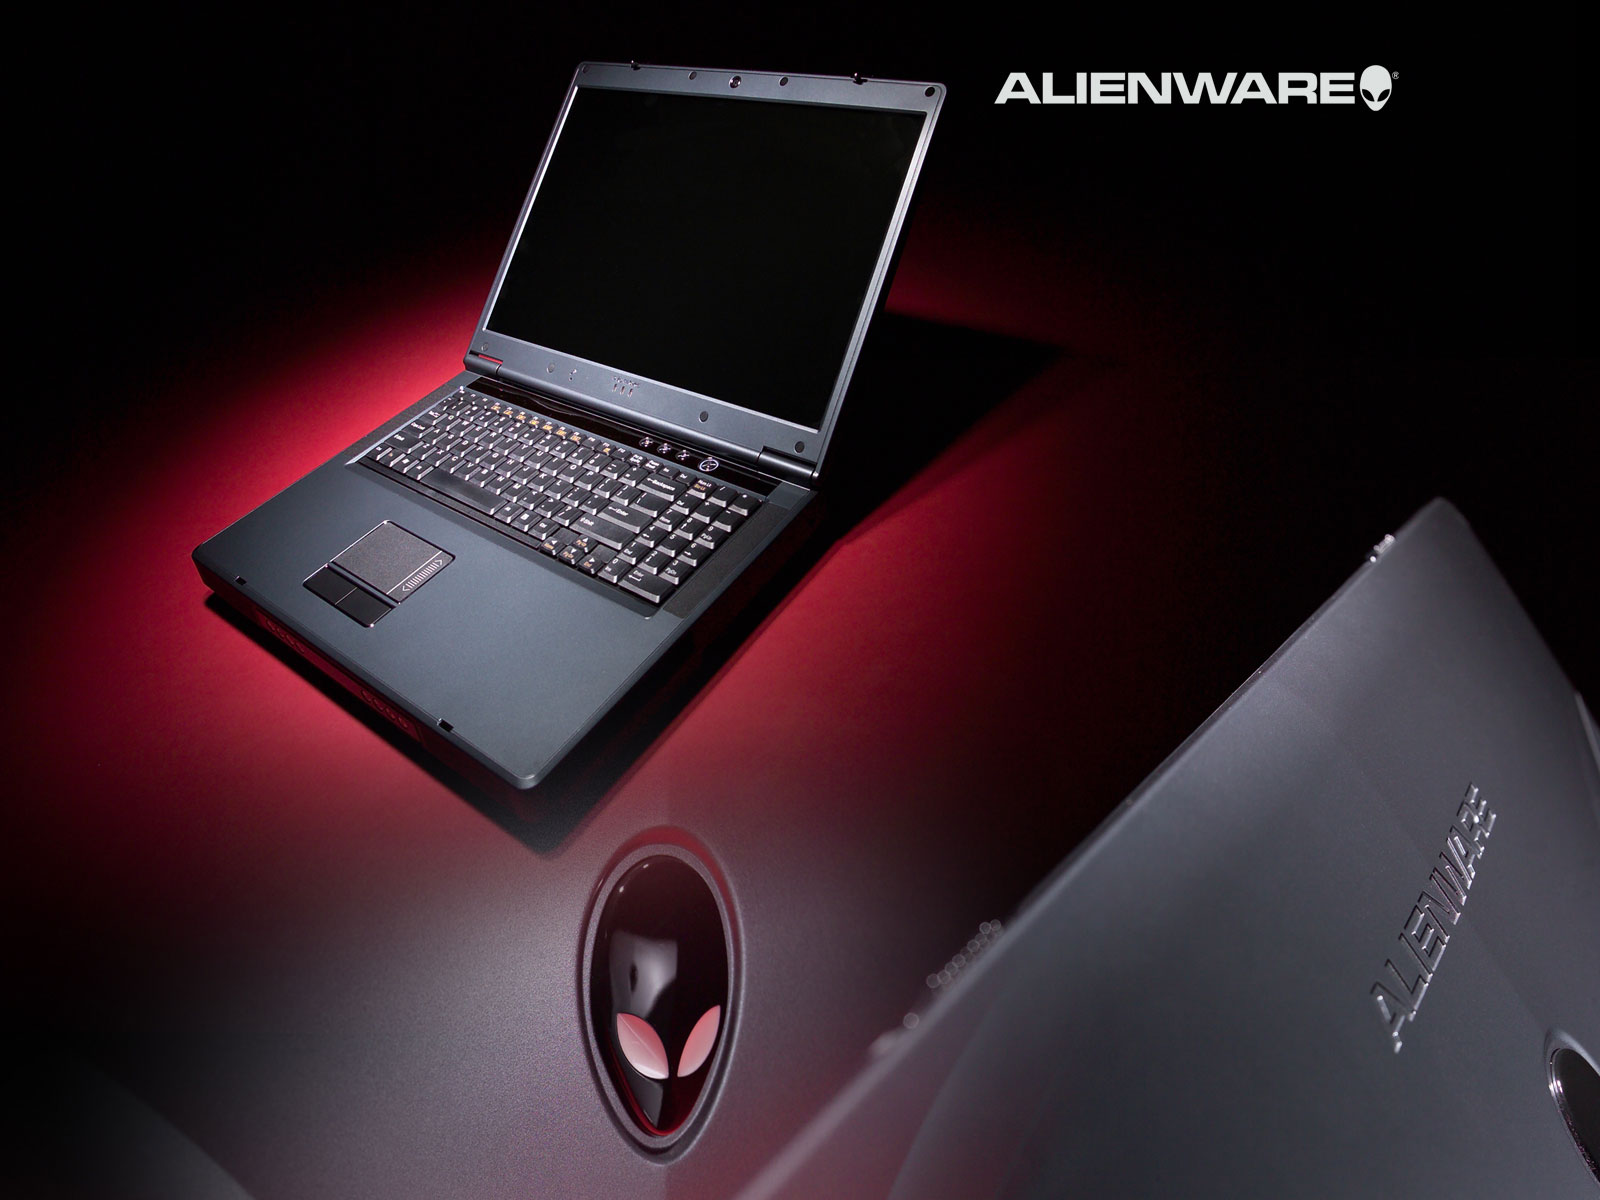 Alienware Laptop Desktop Wallpaper And Stock Photos